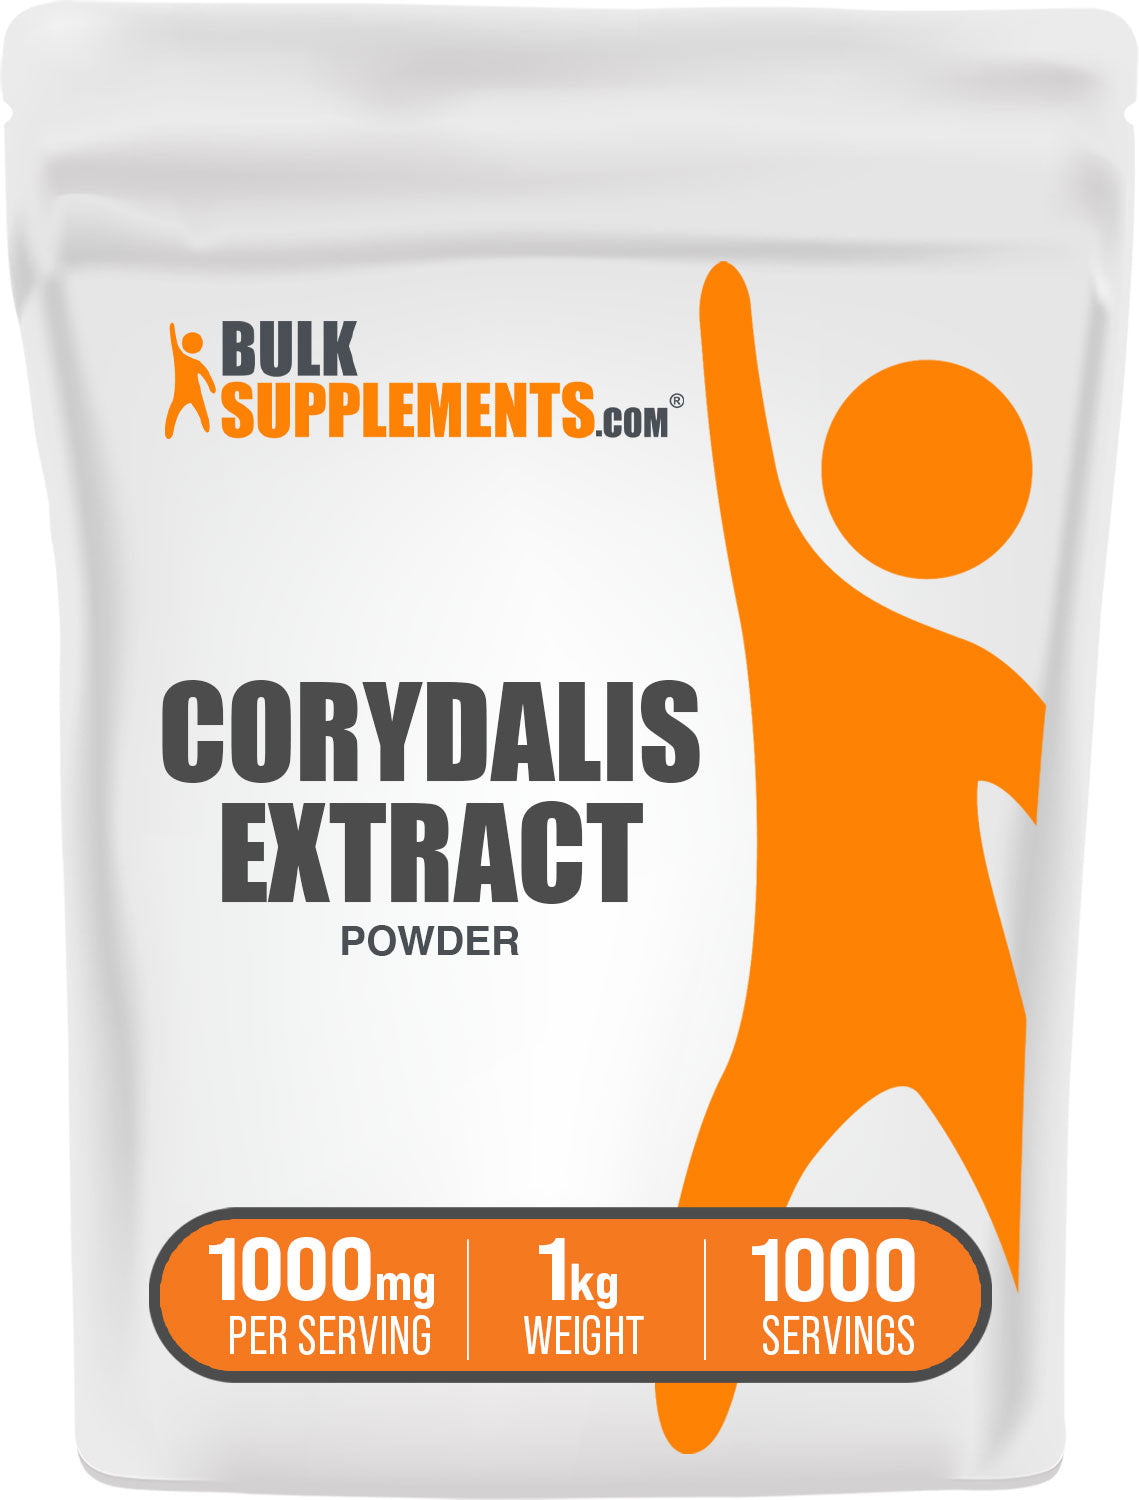 1kg Corydalis Extract